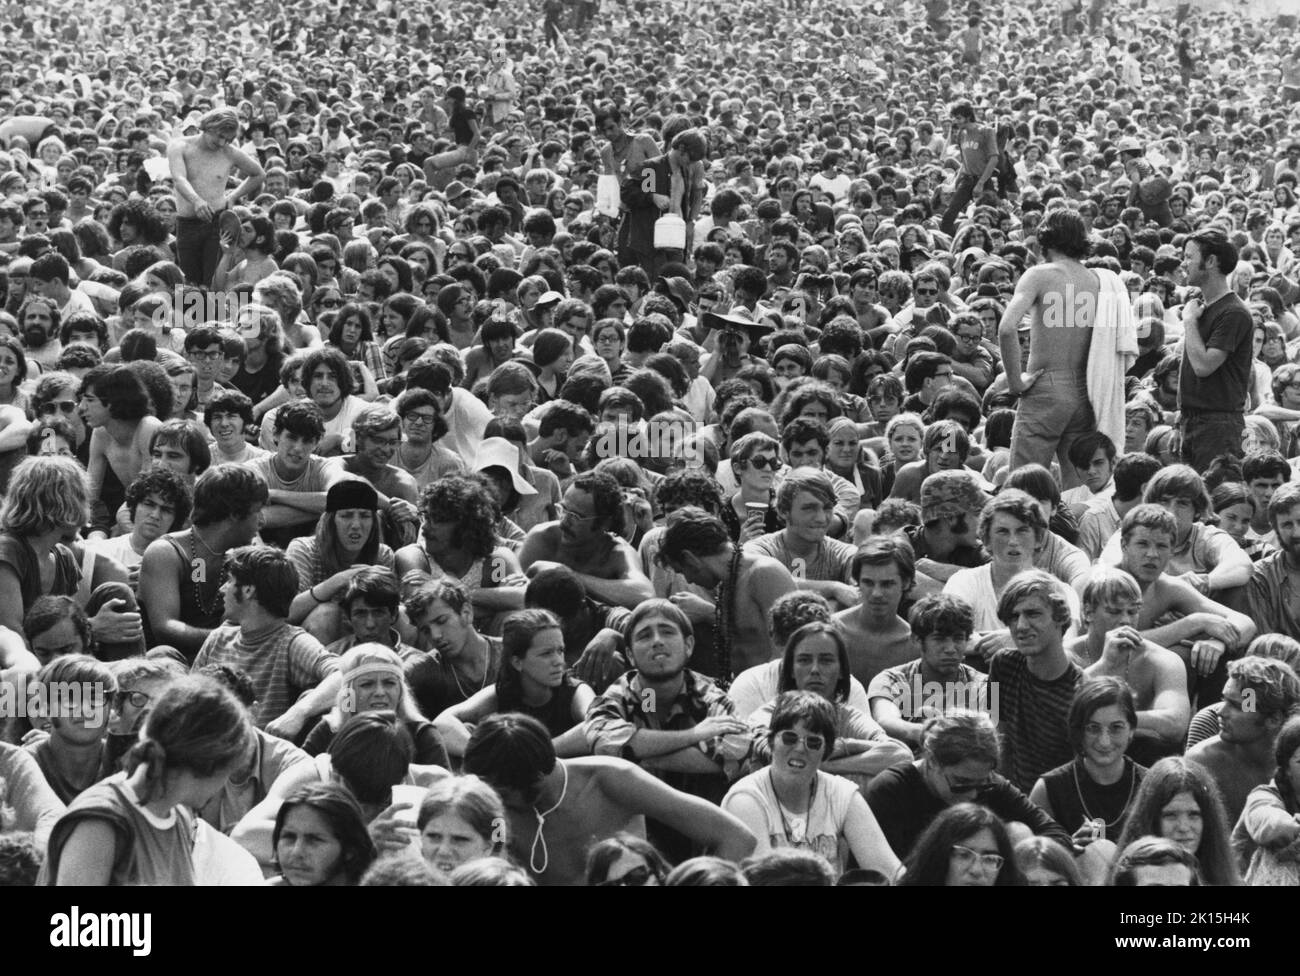 Una mirada a parte de la multitud en el Woodstock Music Festival; 1969. Foto de stock